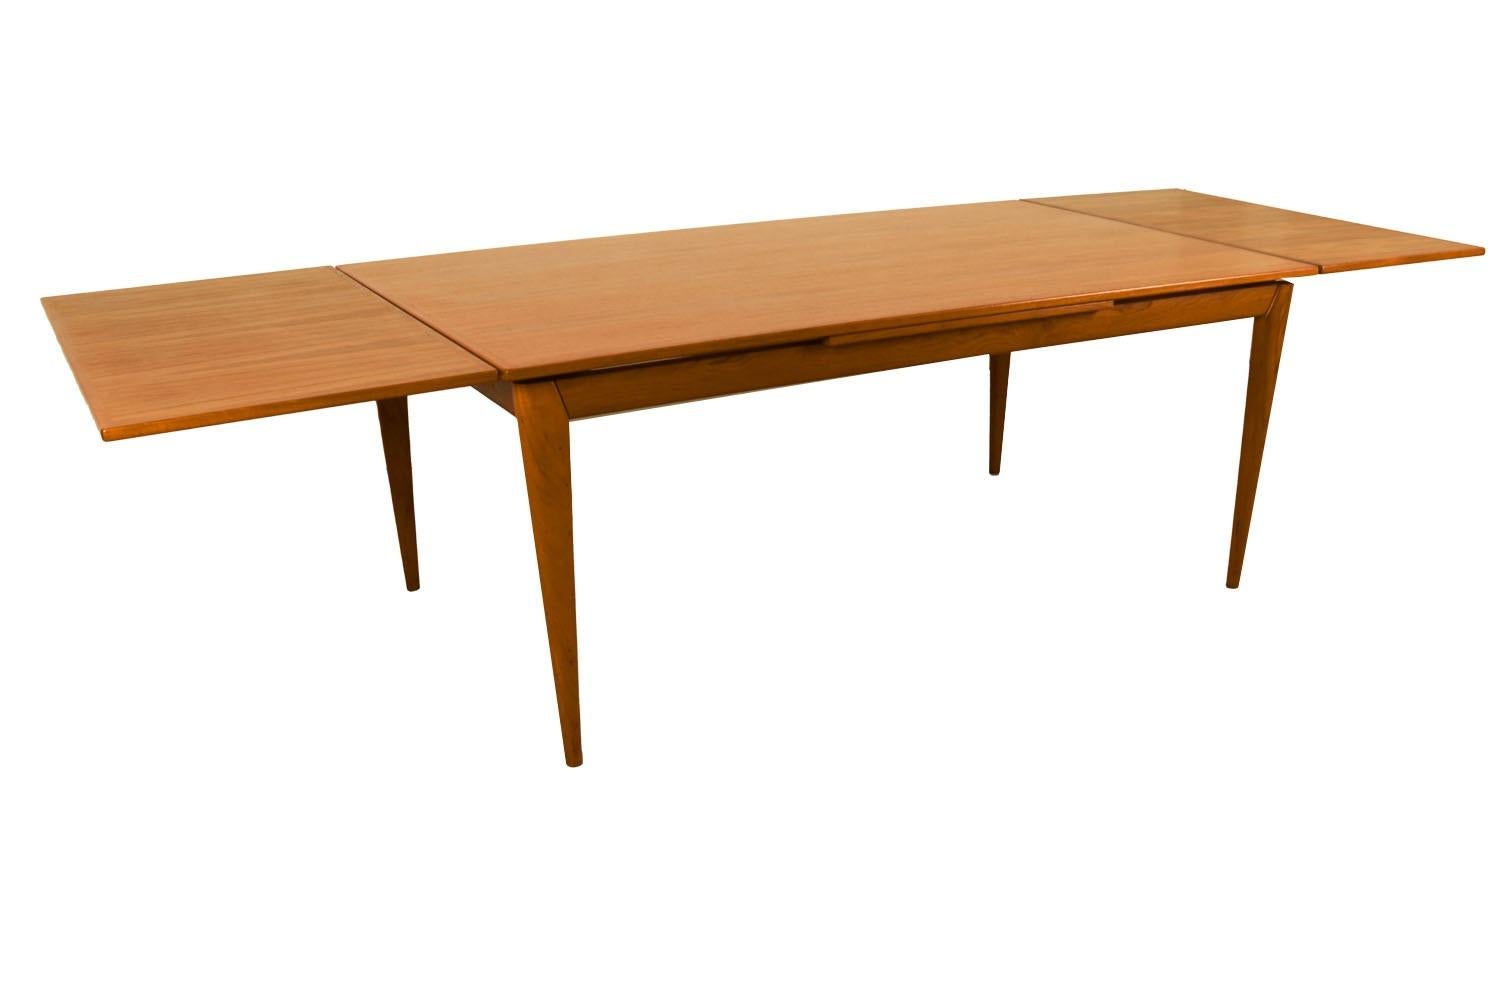 Ein außergewöhnlicher dänischer moderner Esstisch aus Teakholz, hergestellt in Dänemark. Mit seiner anfänglich großen Grundfläche kann dieser Tisch auch einen großzügigen Platz bieten und seine Größe verdoppeln, wenn seine versteckten Ausziehplatten